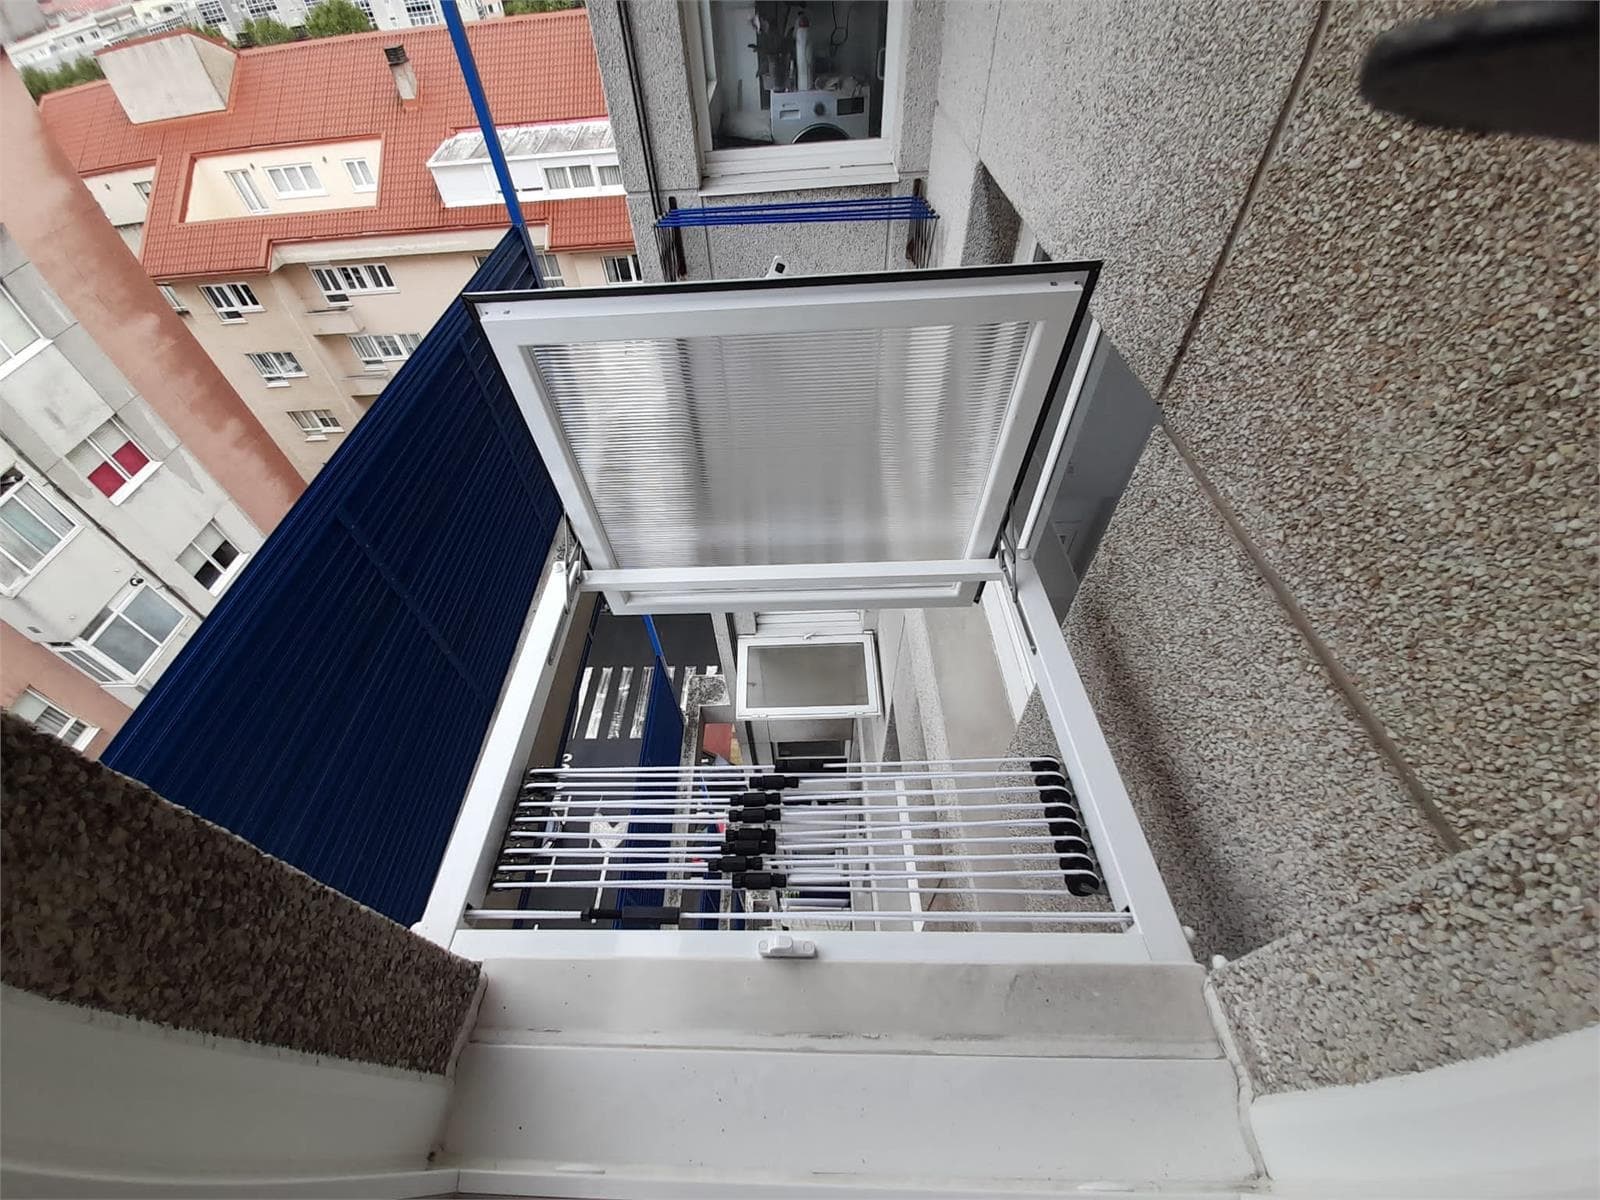 TENDEDEROS EXTERIOR (Tendederos, tendales y cubretendales – Tendalplus en A  Coruña)